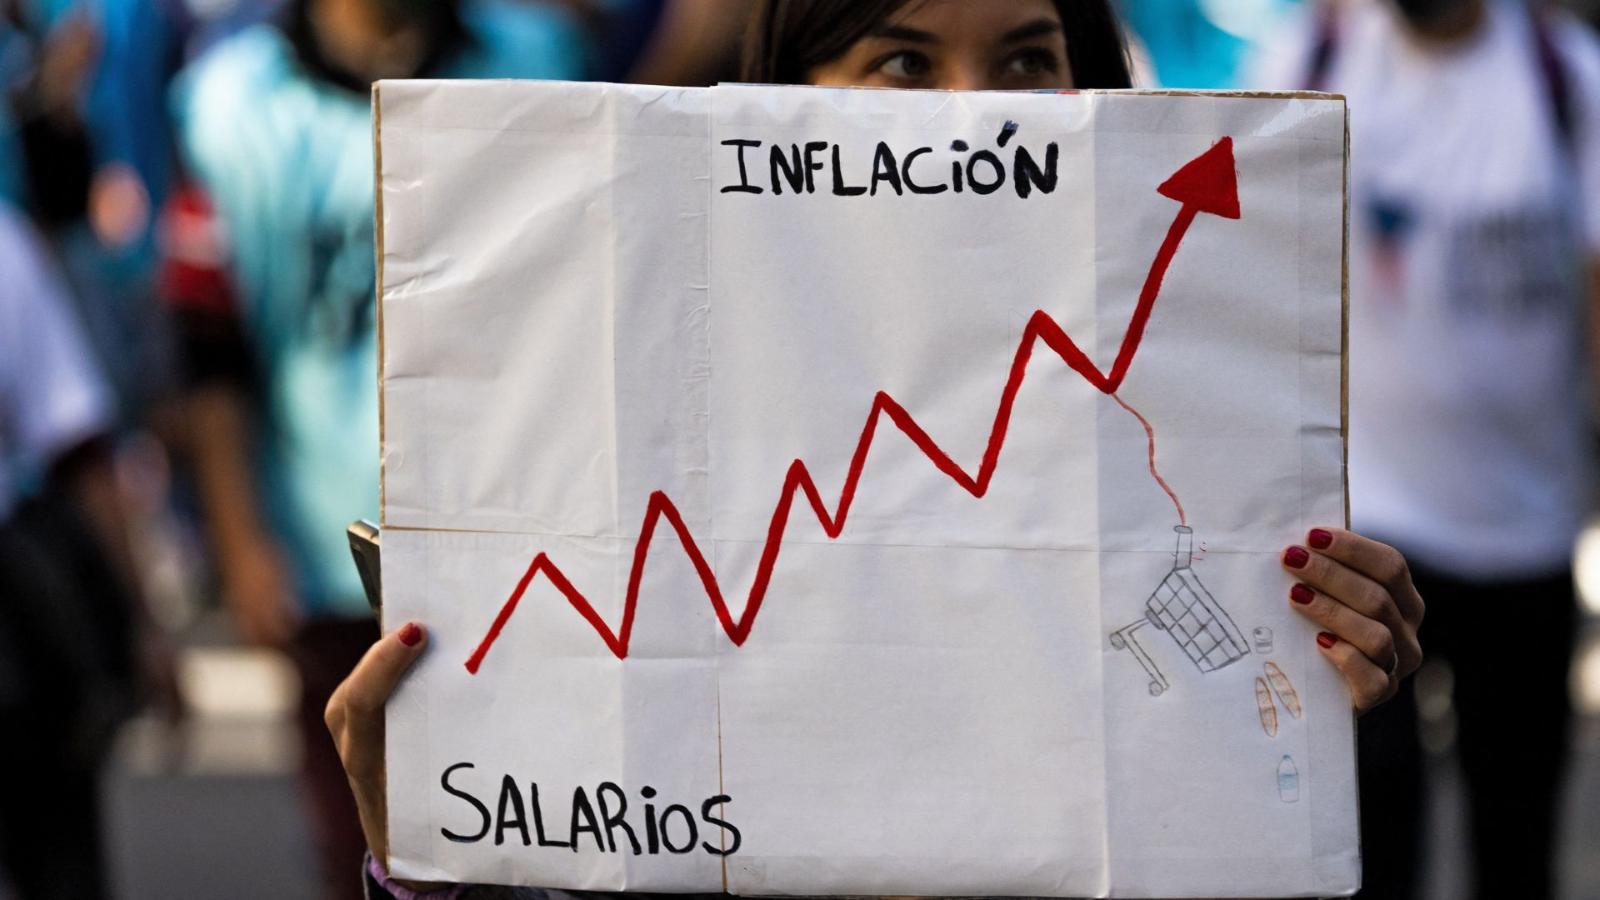 Qué opinan los niños argentinos sobre la inflación en su país? | Video